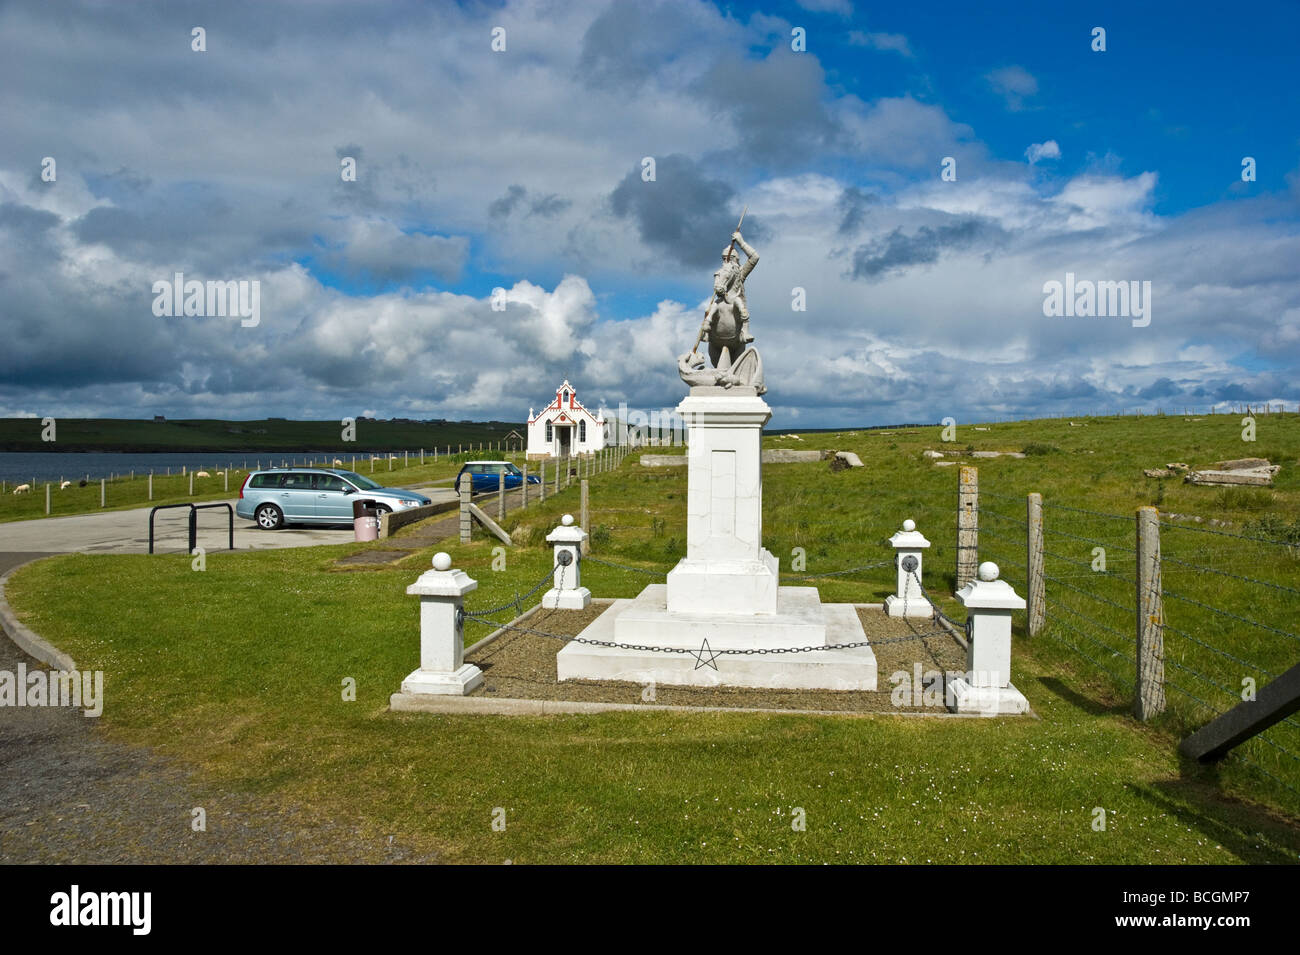 La Cappella italiana sulla piccola isola di agnello Holm in Isole Orcadi Scozia qui si vede con la statua di San Giorgio nella parte anteriore. Foto Stock